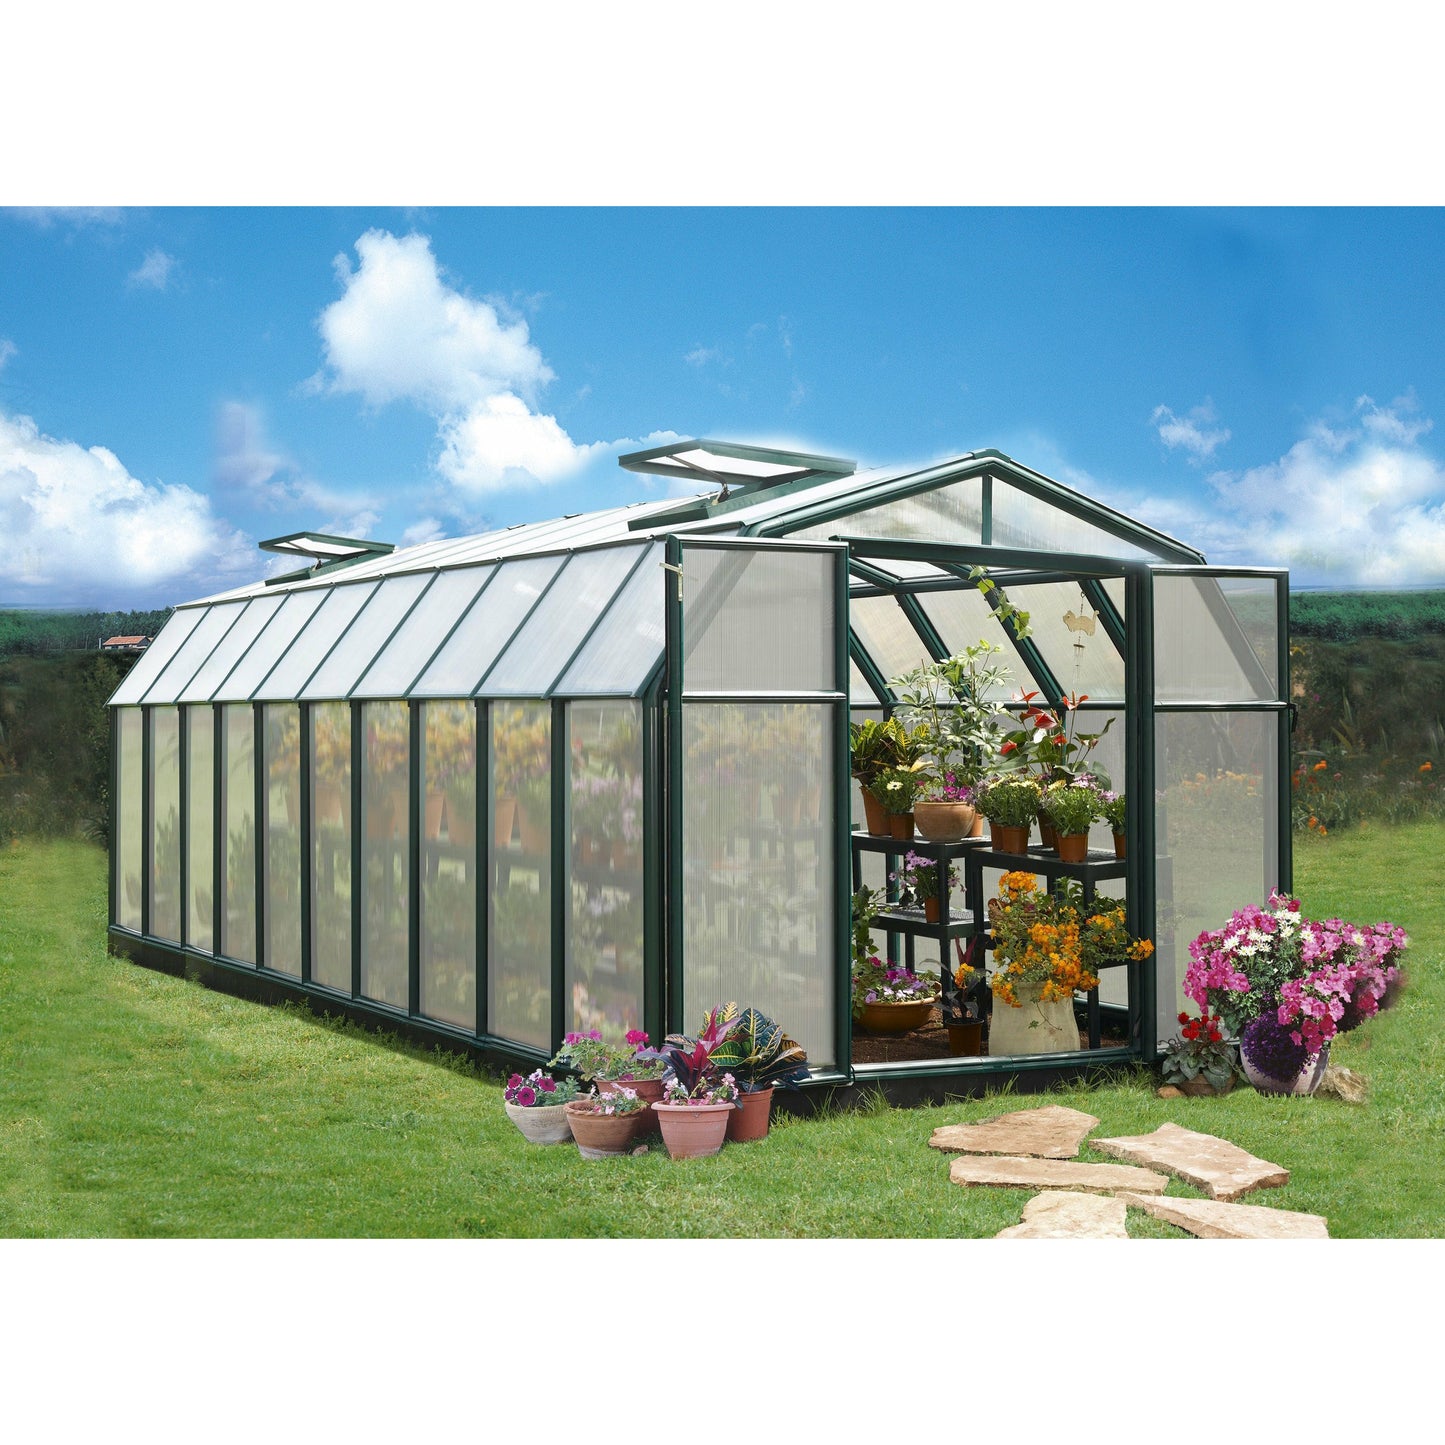 Rion Hobby Gardener 8' x 20' Greenhouse